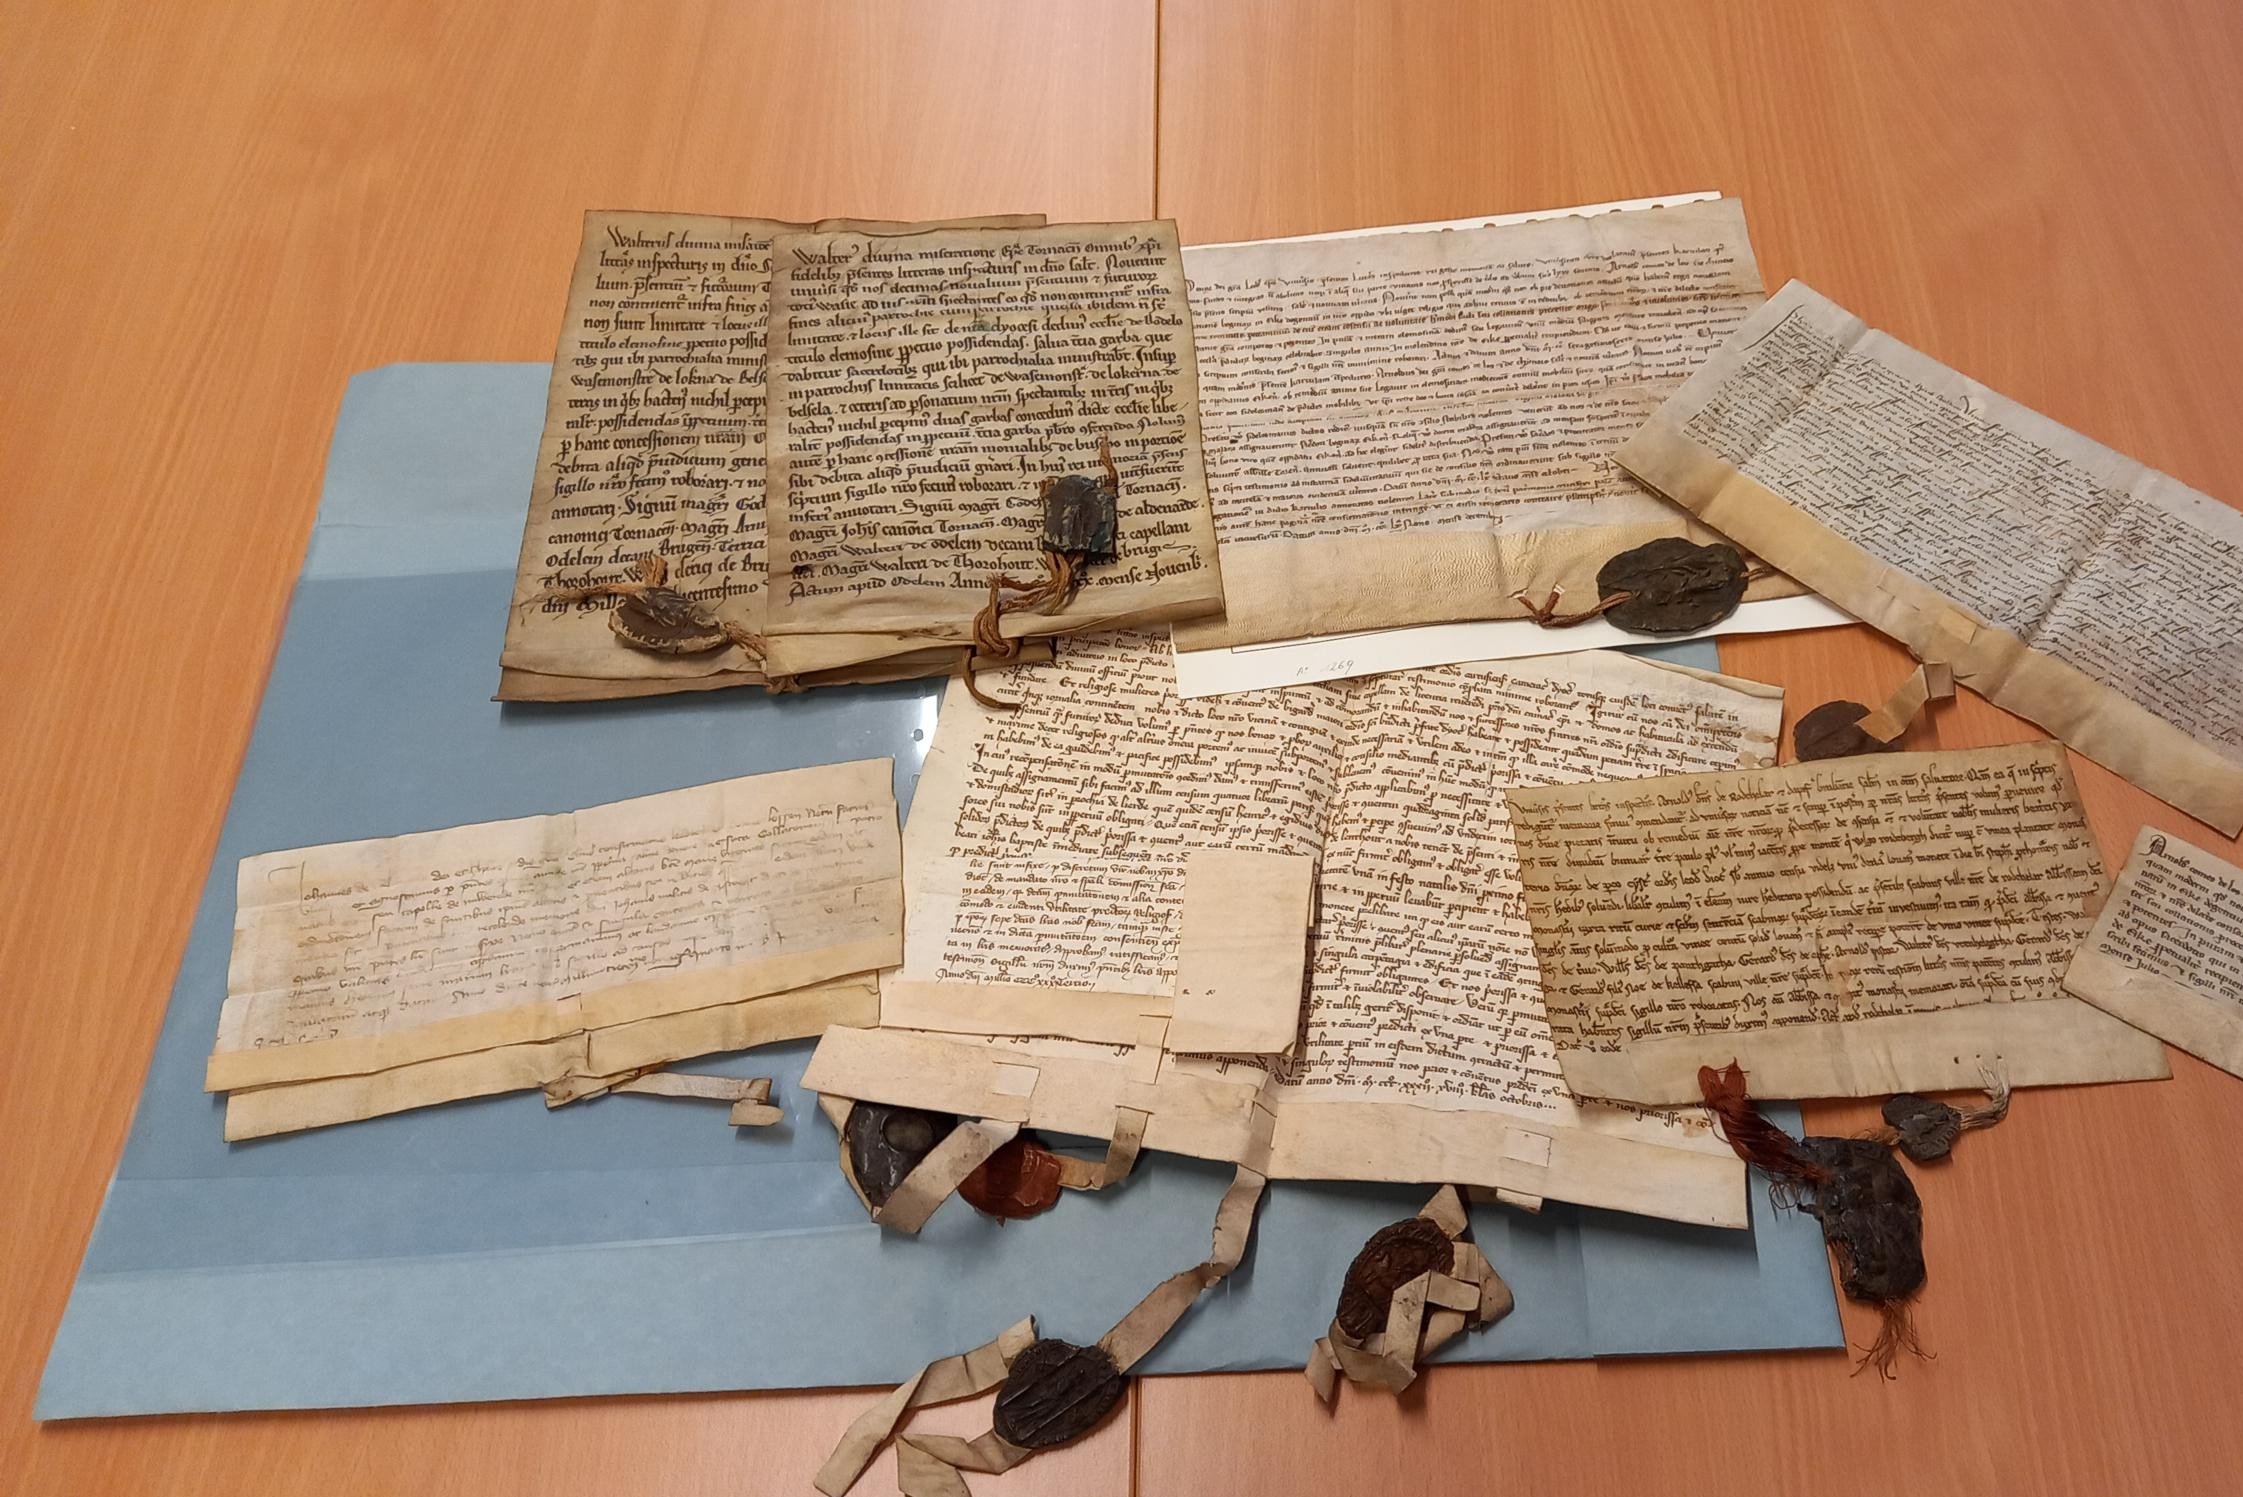 je zelfs 'oud papier' van 800 jaar oud niet zomaar mag kopen of verkopen | Het Belang van Limburg Mobile